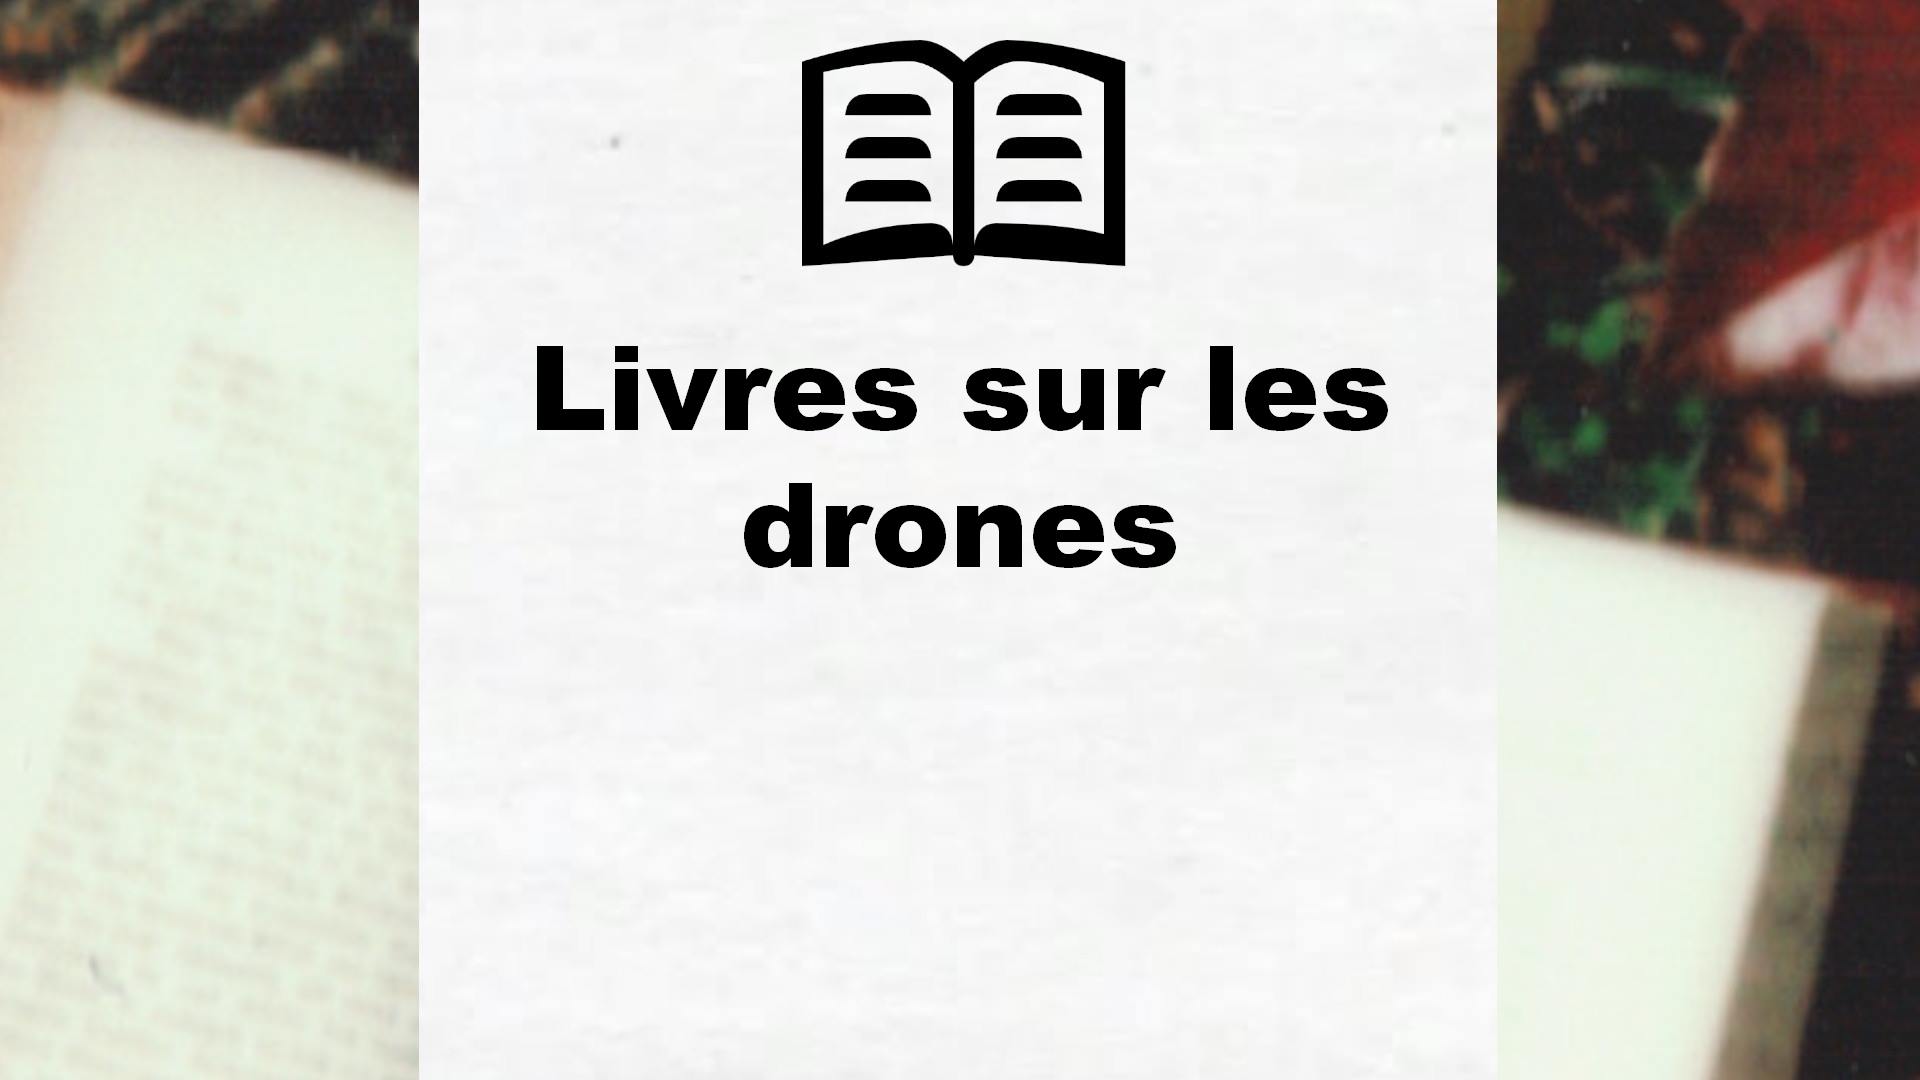 Livres sur les drones